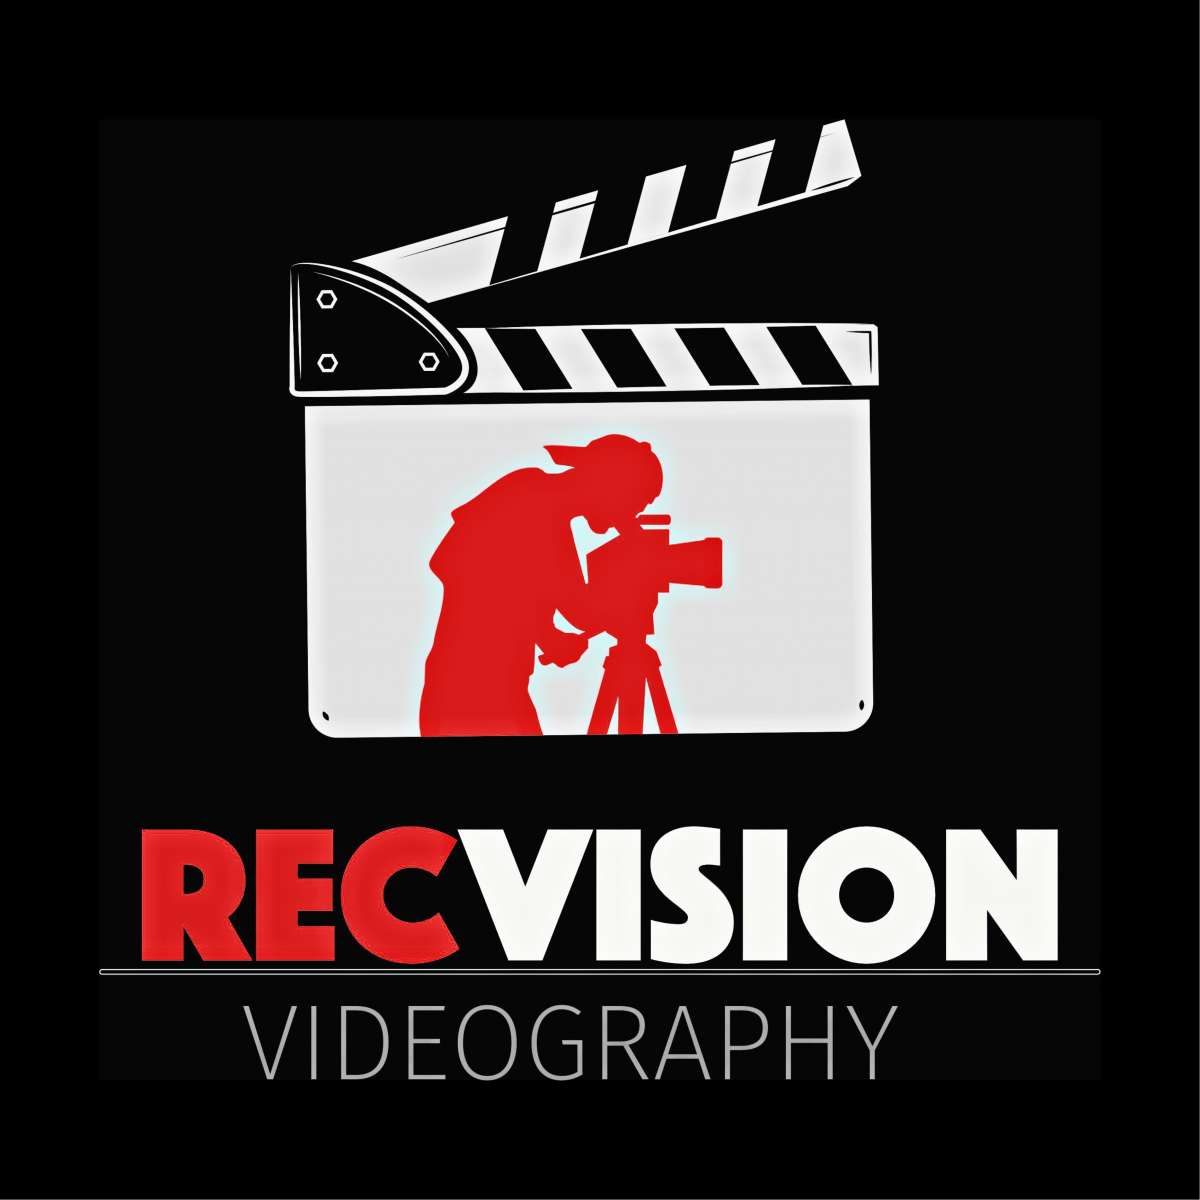 RecVision Videography - Schweinfurt - Video-Streaming und Webcasting Dienste